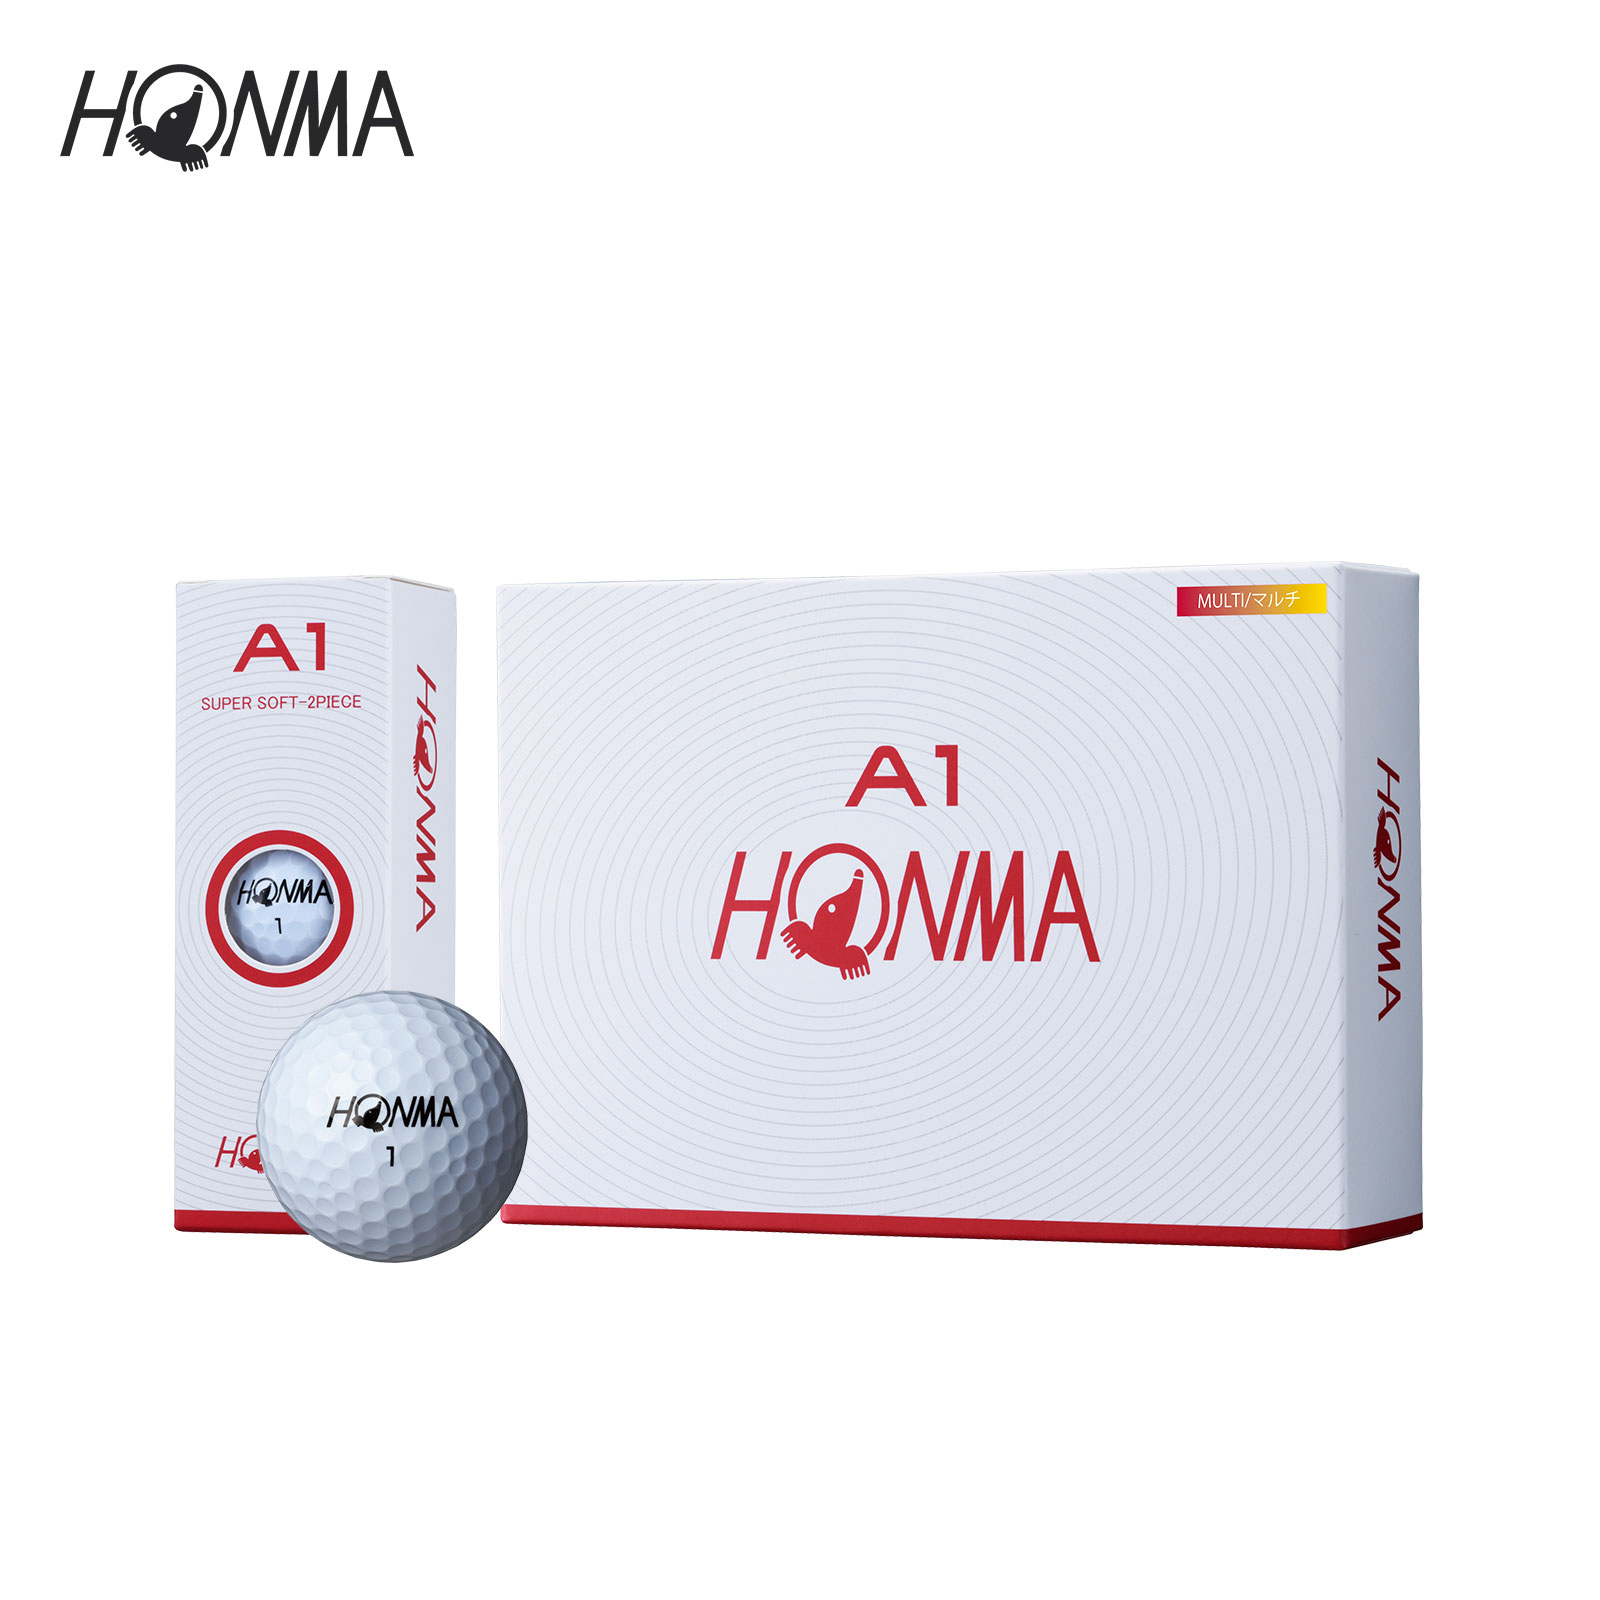 HONMAกอล์ฟ A1-GOLF สองชั้น12เม็ด/กล่อง*3 50ราคาซื้อกลุ่มกล่องของขวัญหกลูก